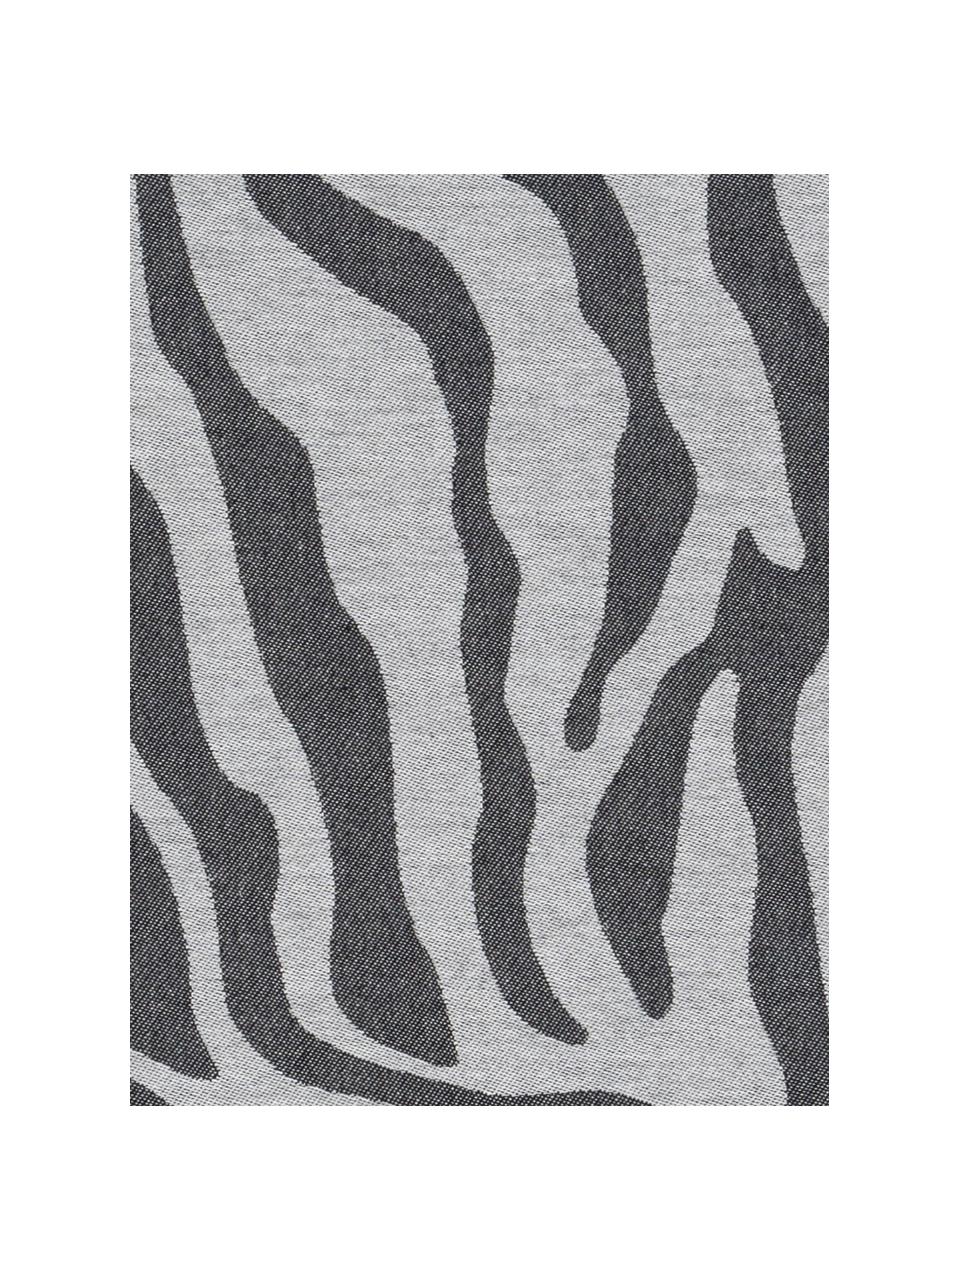 Baumwoll-Geschirrtücher Africa mit Zebramuster, 6 Stück, Baumwolle, Schwarz, Weiss, B 60 x L 65 cm